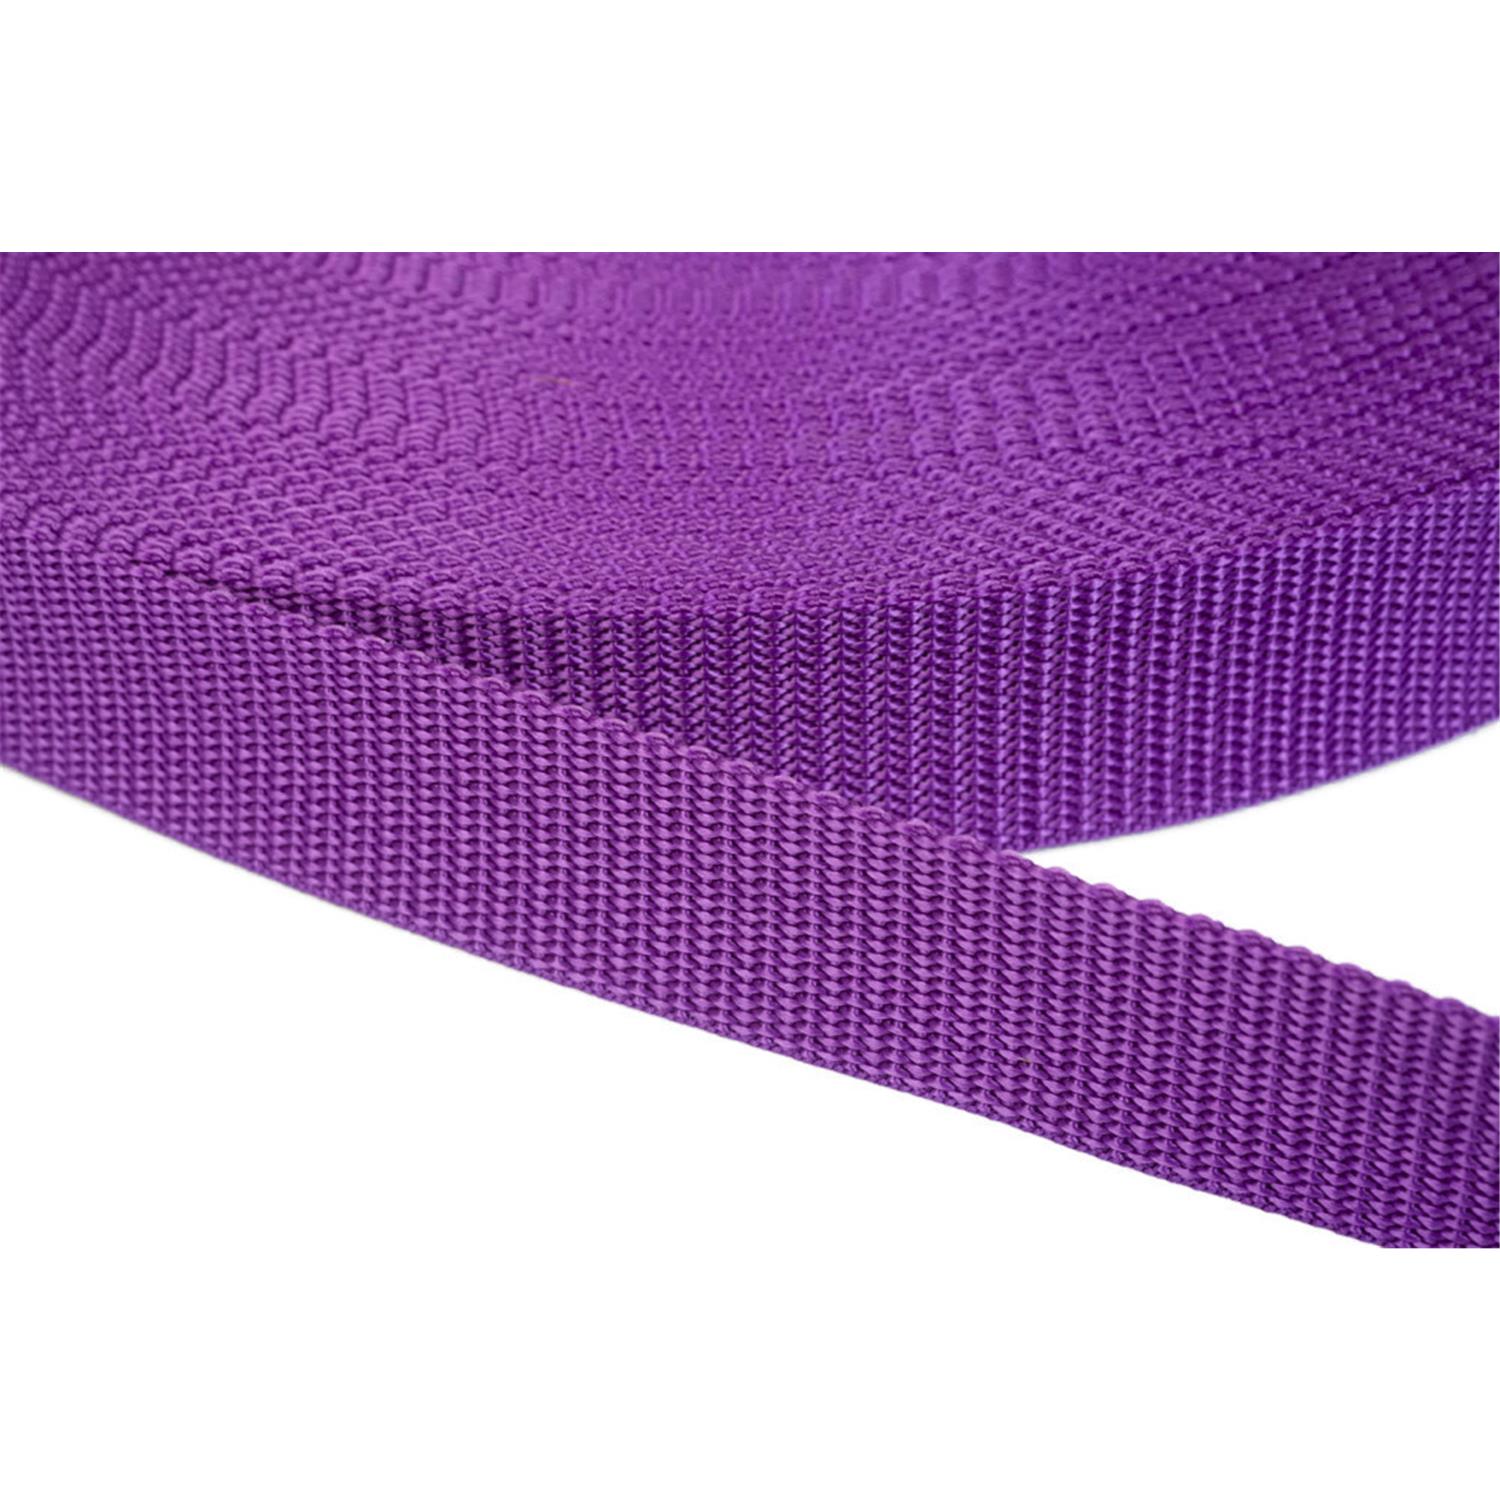 Gurtband 50mm breit aus Polypropylen in 41 Farben 24 - lila 6 Meter